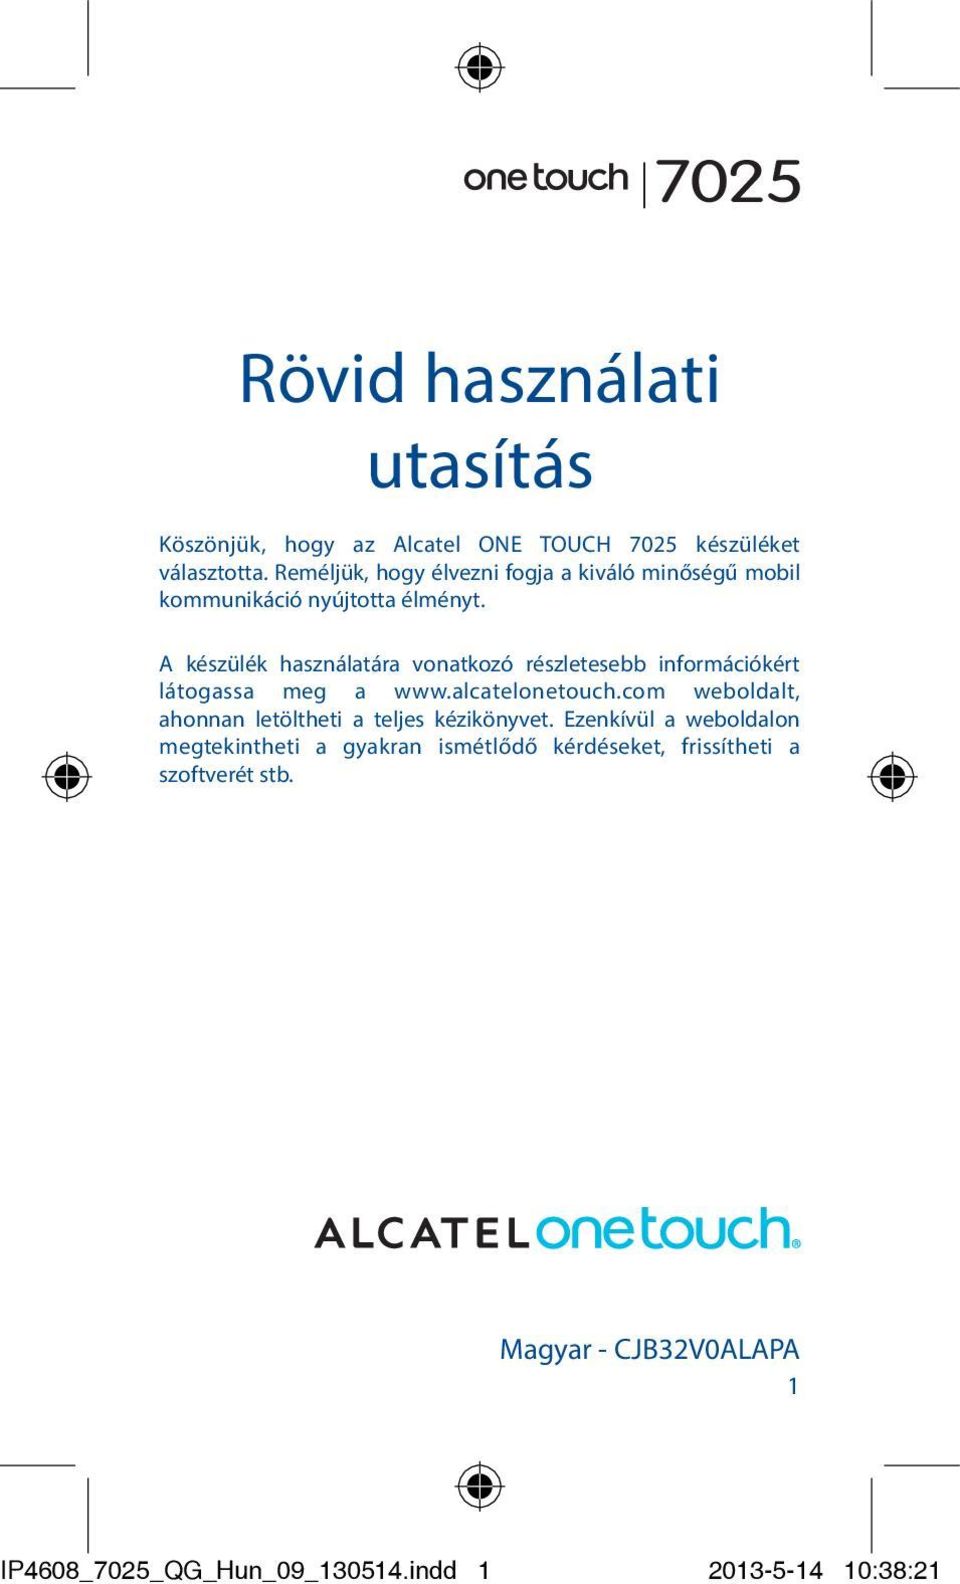 A készülék használatára vonatkozó részletesebb információkért látogassa meg a www.alcatelonetouch.